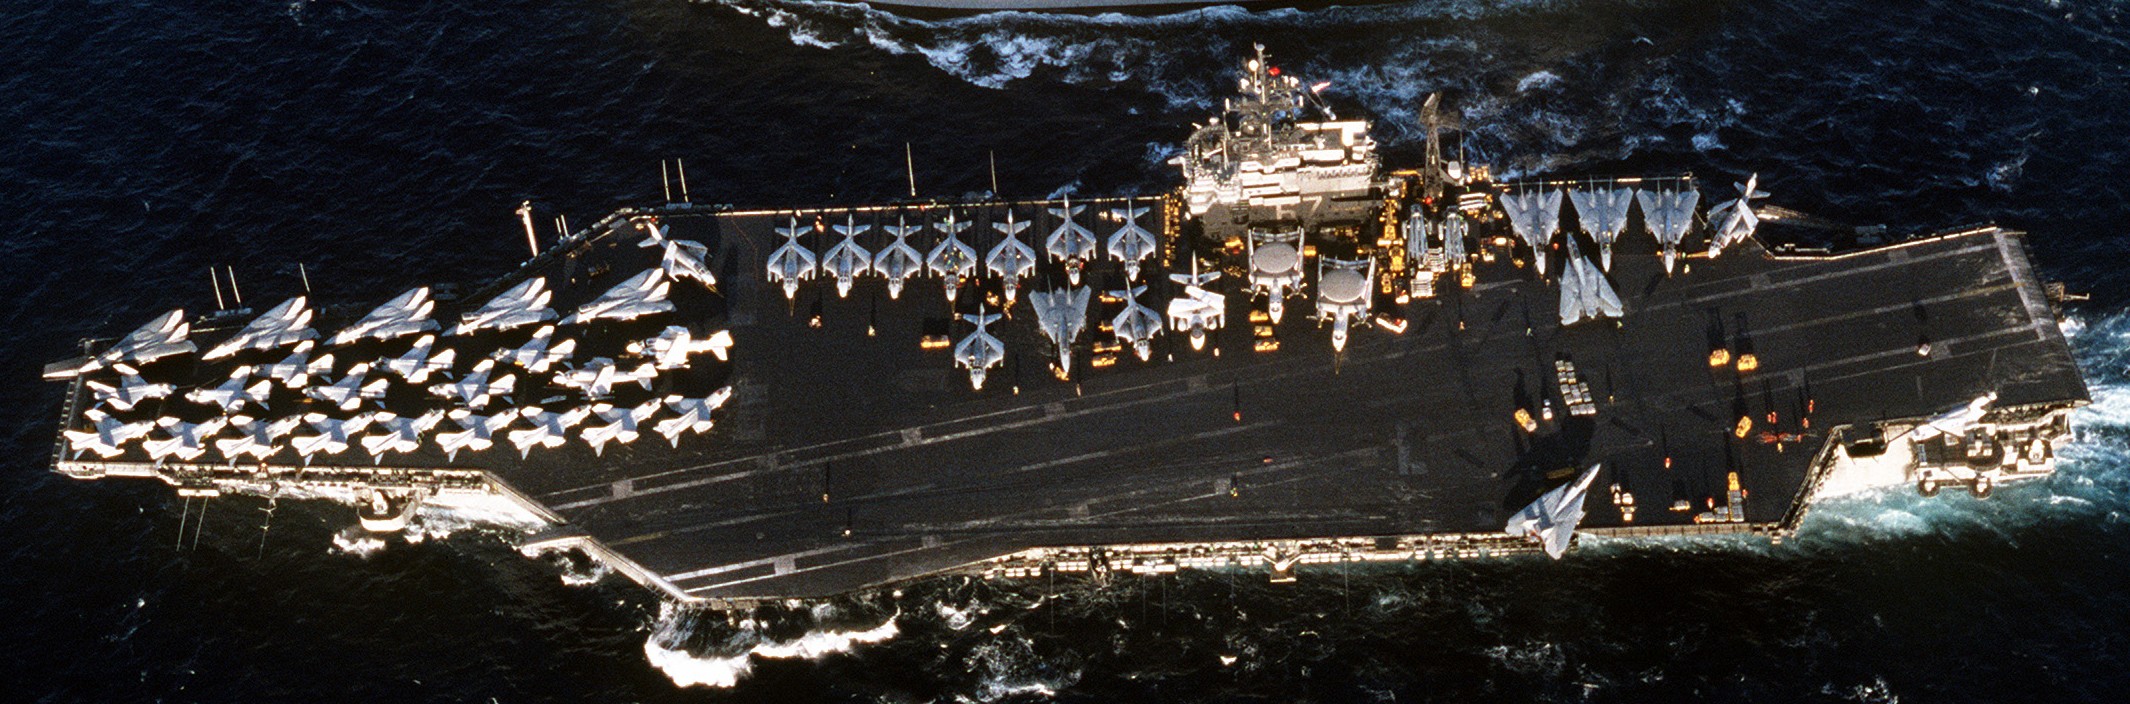 cv-67 uss john f. kennedy aircraft carrier air wing cvw-3 us navy desert storm 1991 39